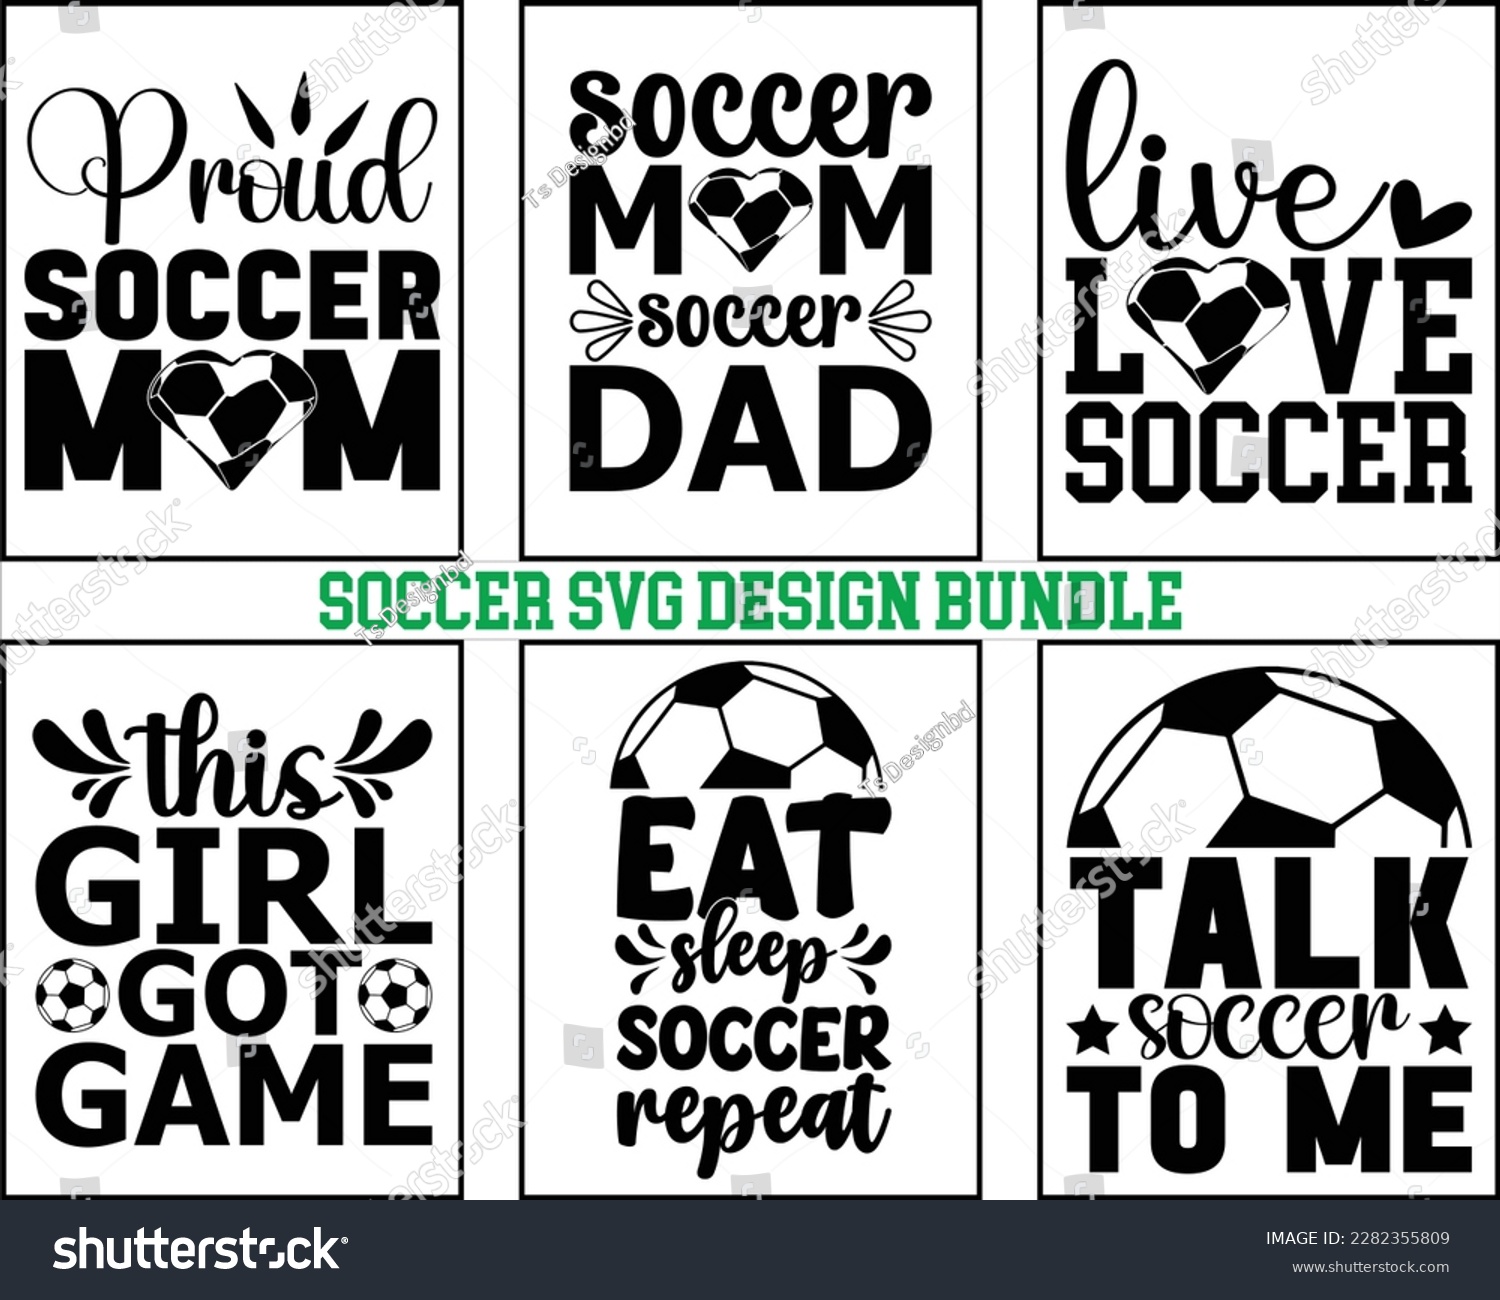 SVG of Soccer svg Bundle Design,Soccer Mom Svg Bundle,Game Day Svg, Retro Soccer Svg,FootBall Svg,Proud Soccer Svg Bundle,Soccer Quote svg